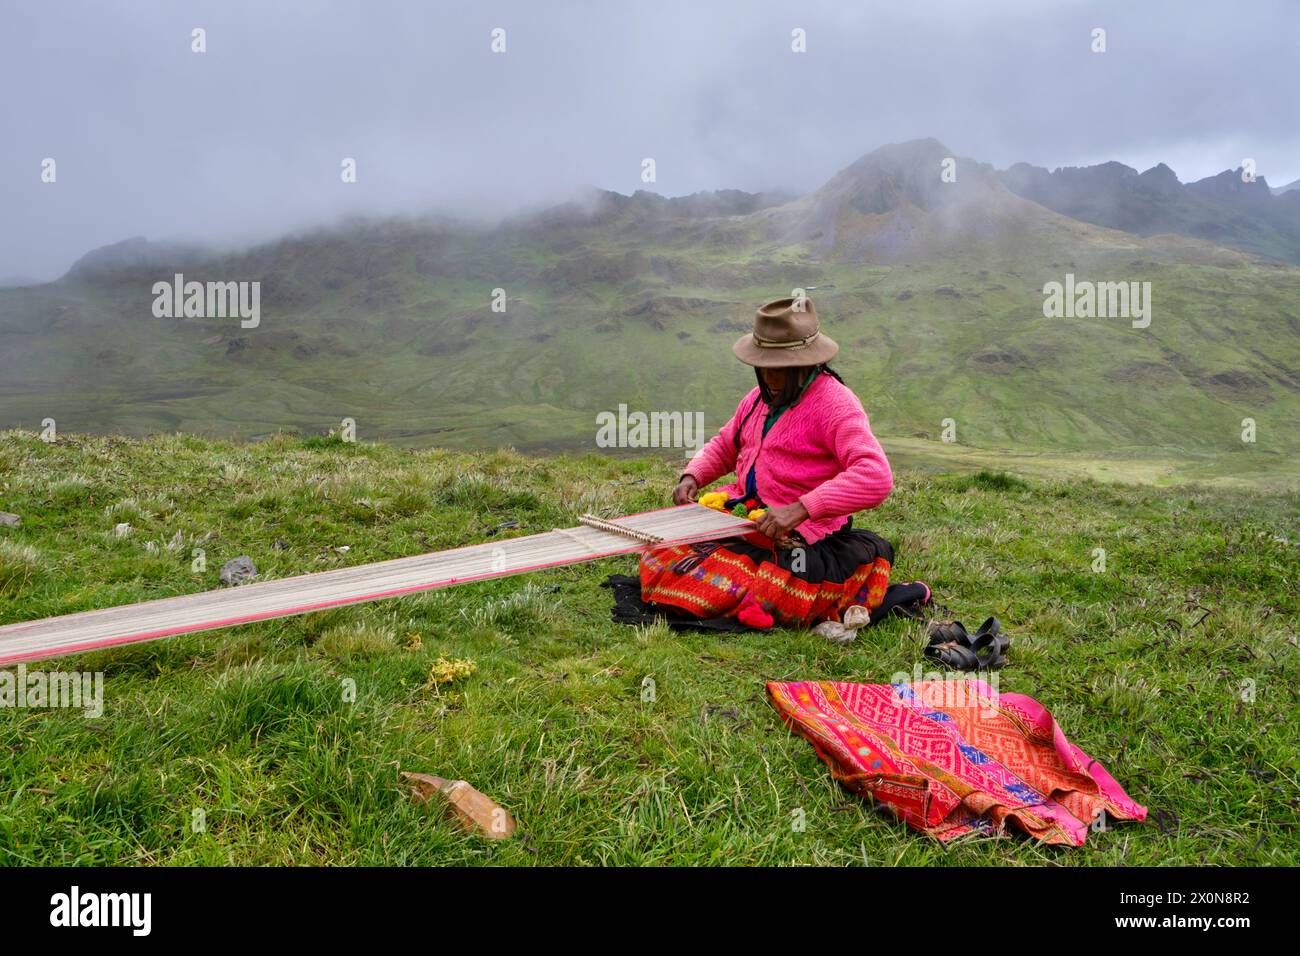 Pérou, province de Cuzco, Vallée sacrée des Incas, communauté quechua des Andes, femme tissant un tissu traditionnel, métier à tisser Banque D'Images